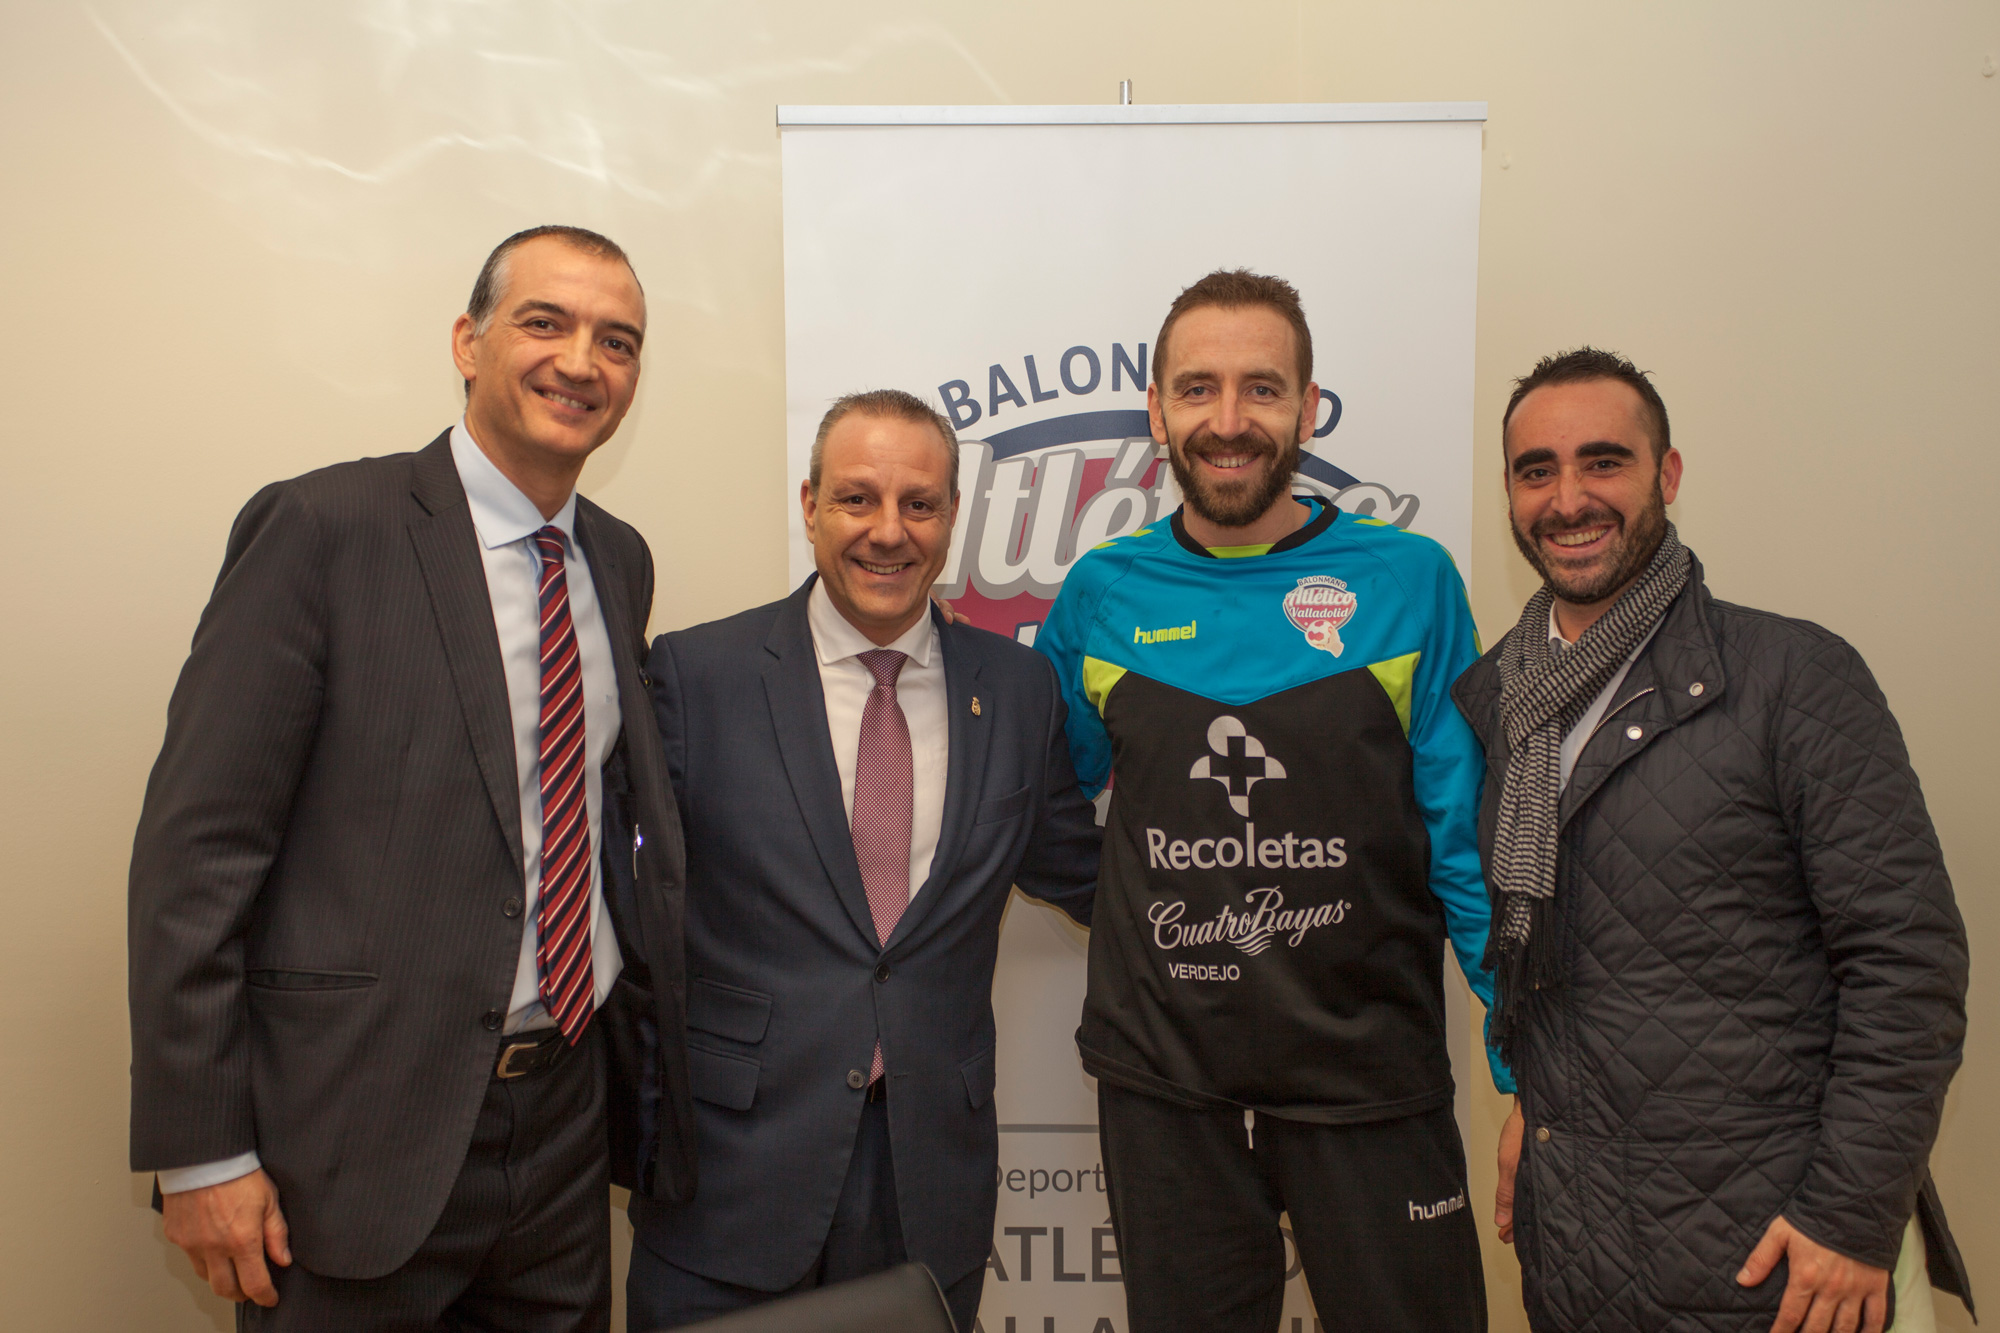 El Atlético Valladolid Recoletas recibe la visita del presidente de la Federación Española de Balonmano | Galería 2 / 3